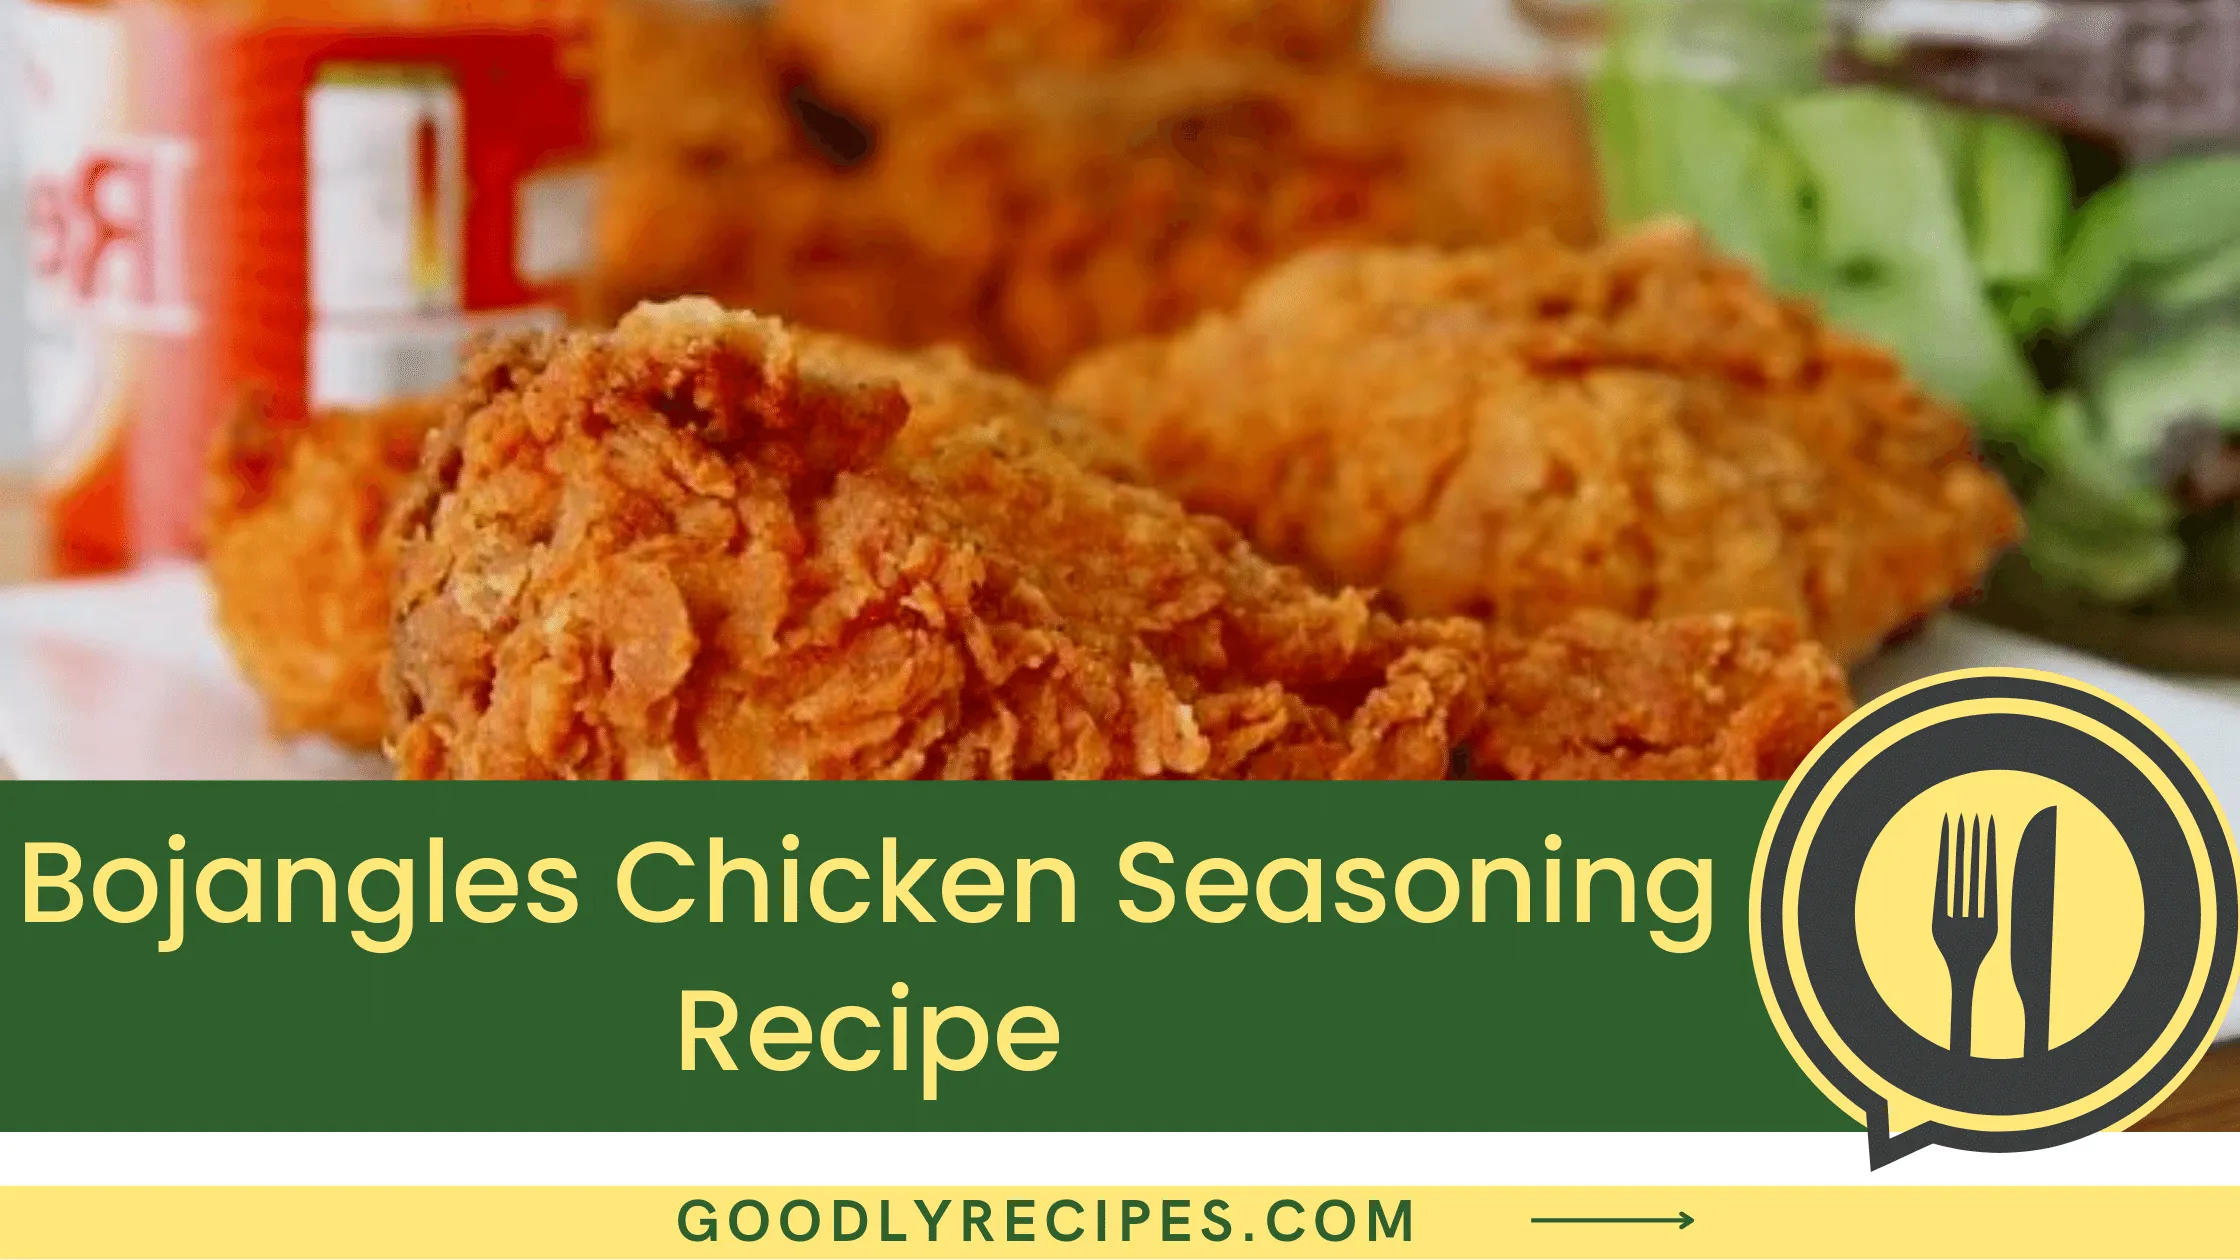 What is Bojangles Chicken Seasoning?